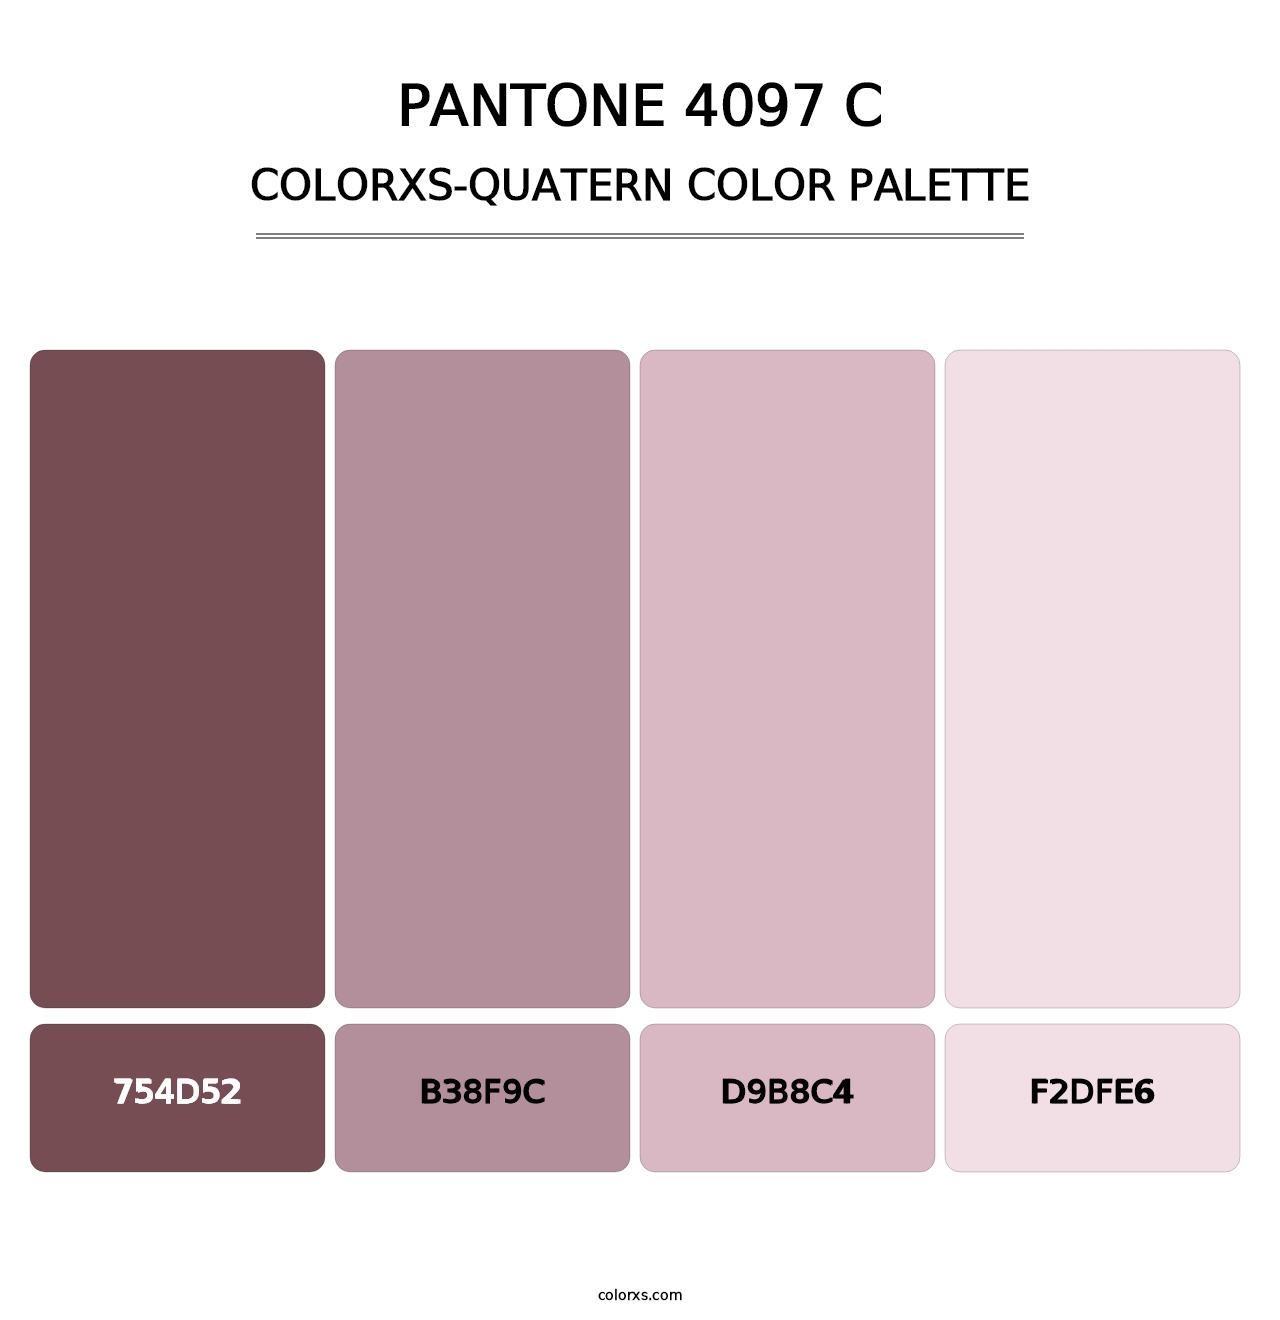 PANTONE 4097 C - Colorxs Quatern Palette